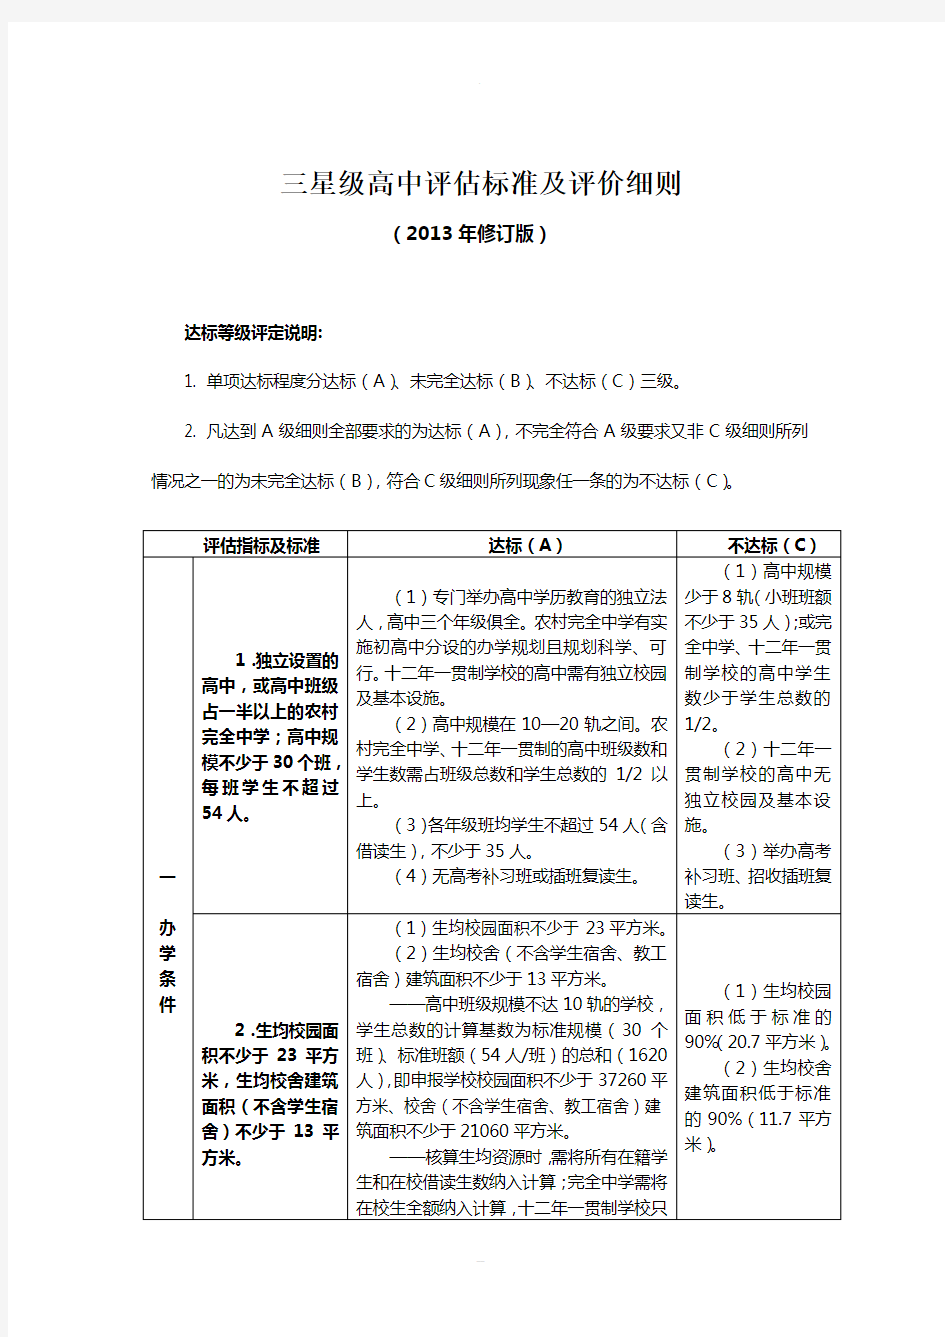 江苏省三星级高中评估标准及评价细则(2013年修订版)